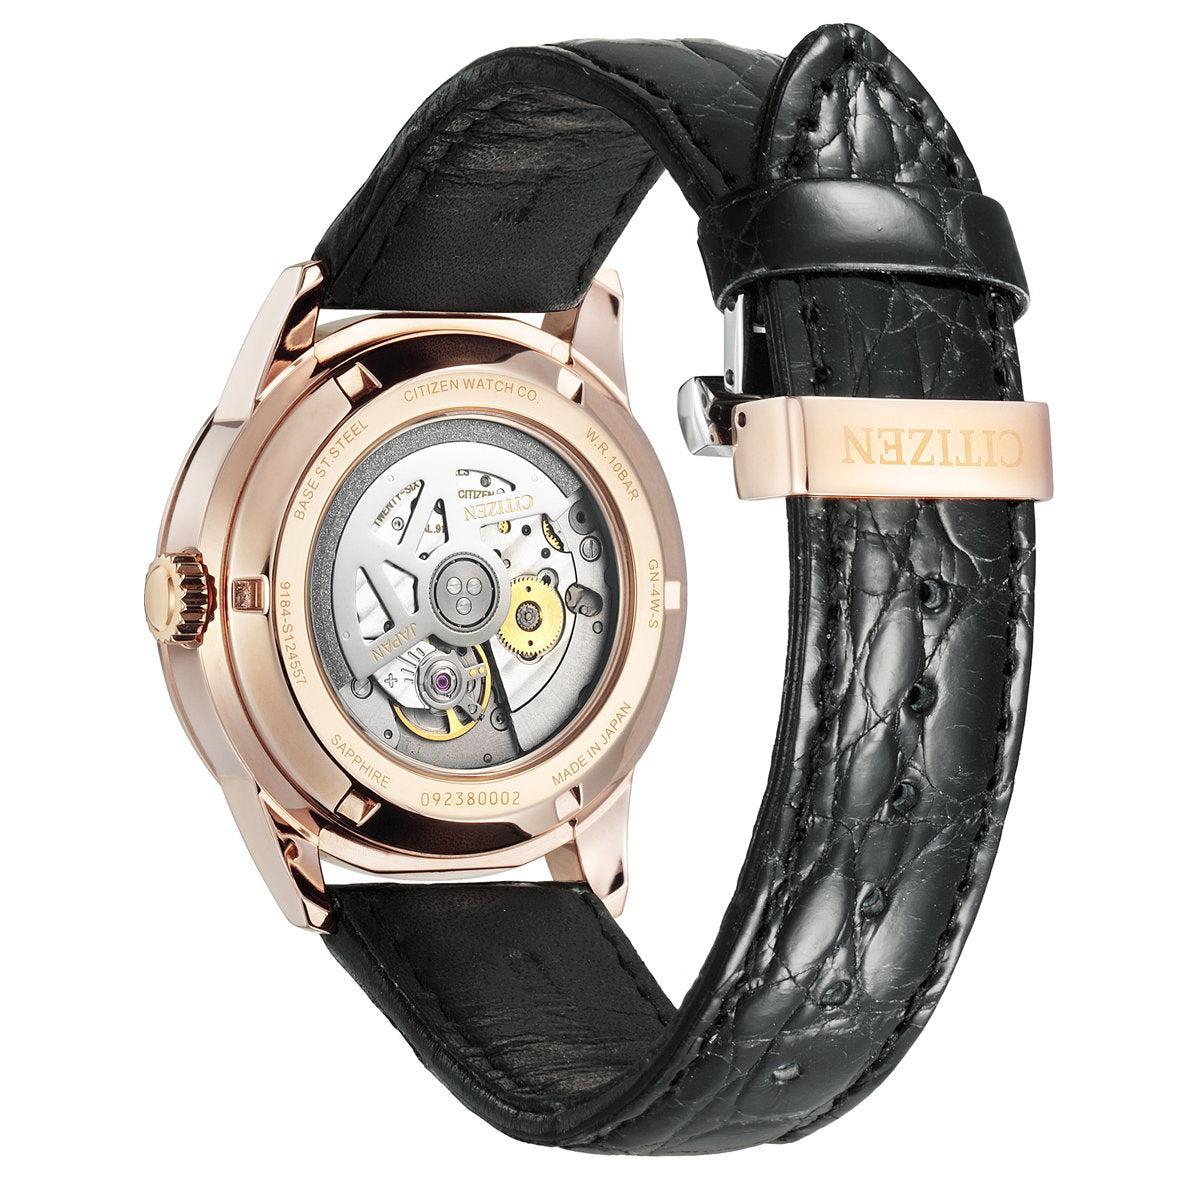 シチズンコレクション CITIZEN COLLECTION メカニカル 自動巻き 機械式 腕時計 メンズ クラシカルライン マルチハンズ NB3002-00E